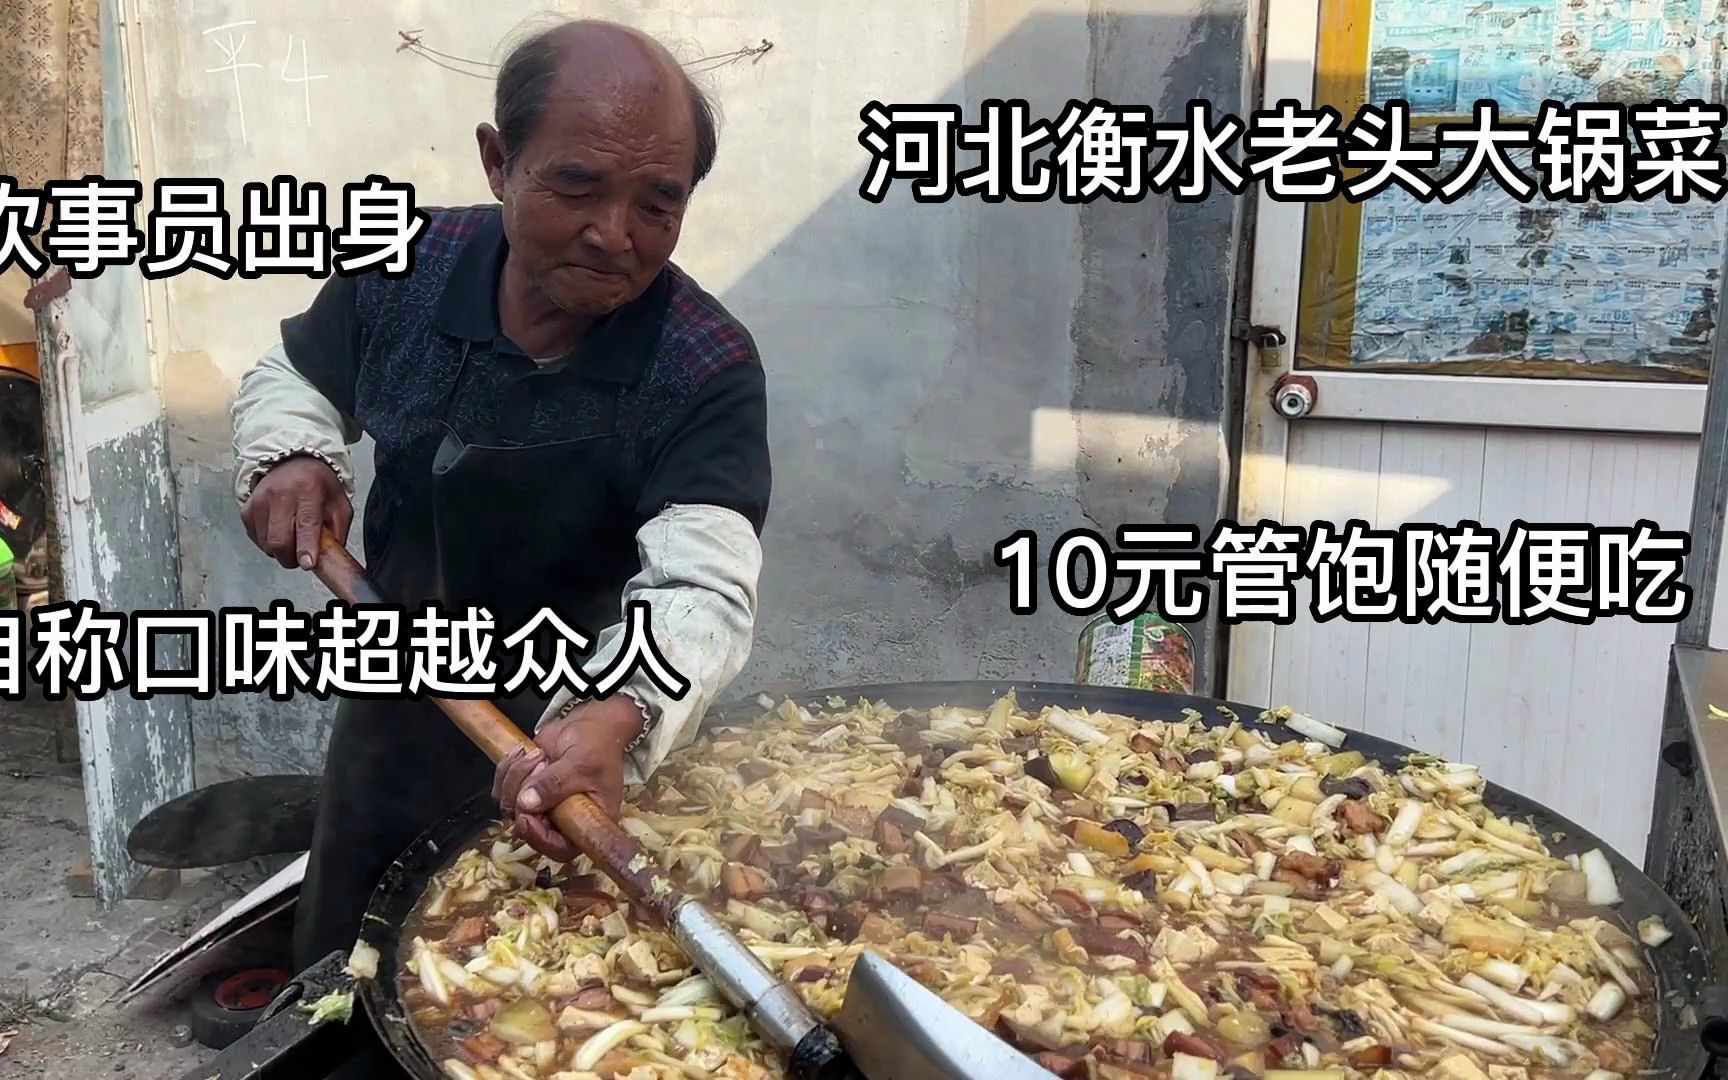 河北70岁大爷炊事员出身，卖大锅菜10元管饱，直言口味超越众人